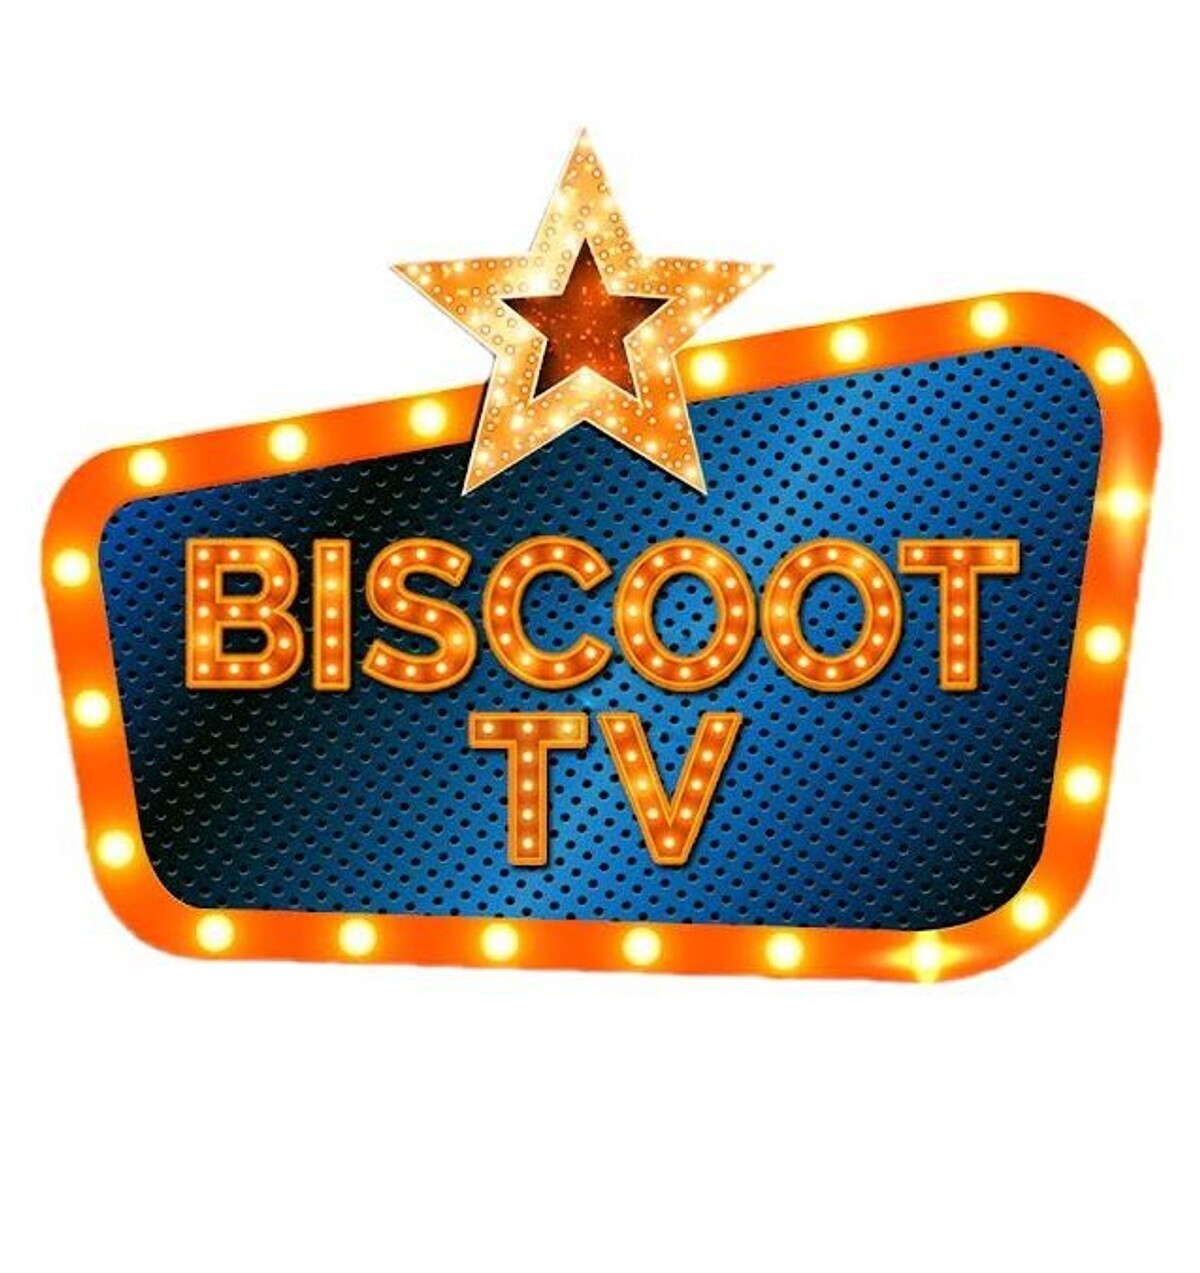 Biscoot Tv photo